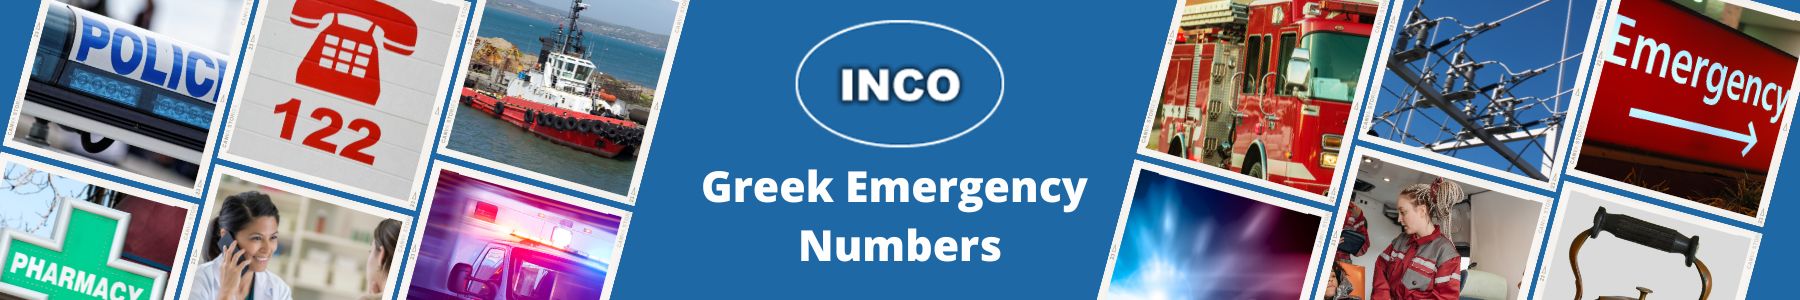 Greek Emergency Numbers